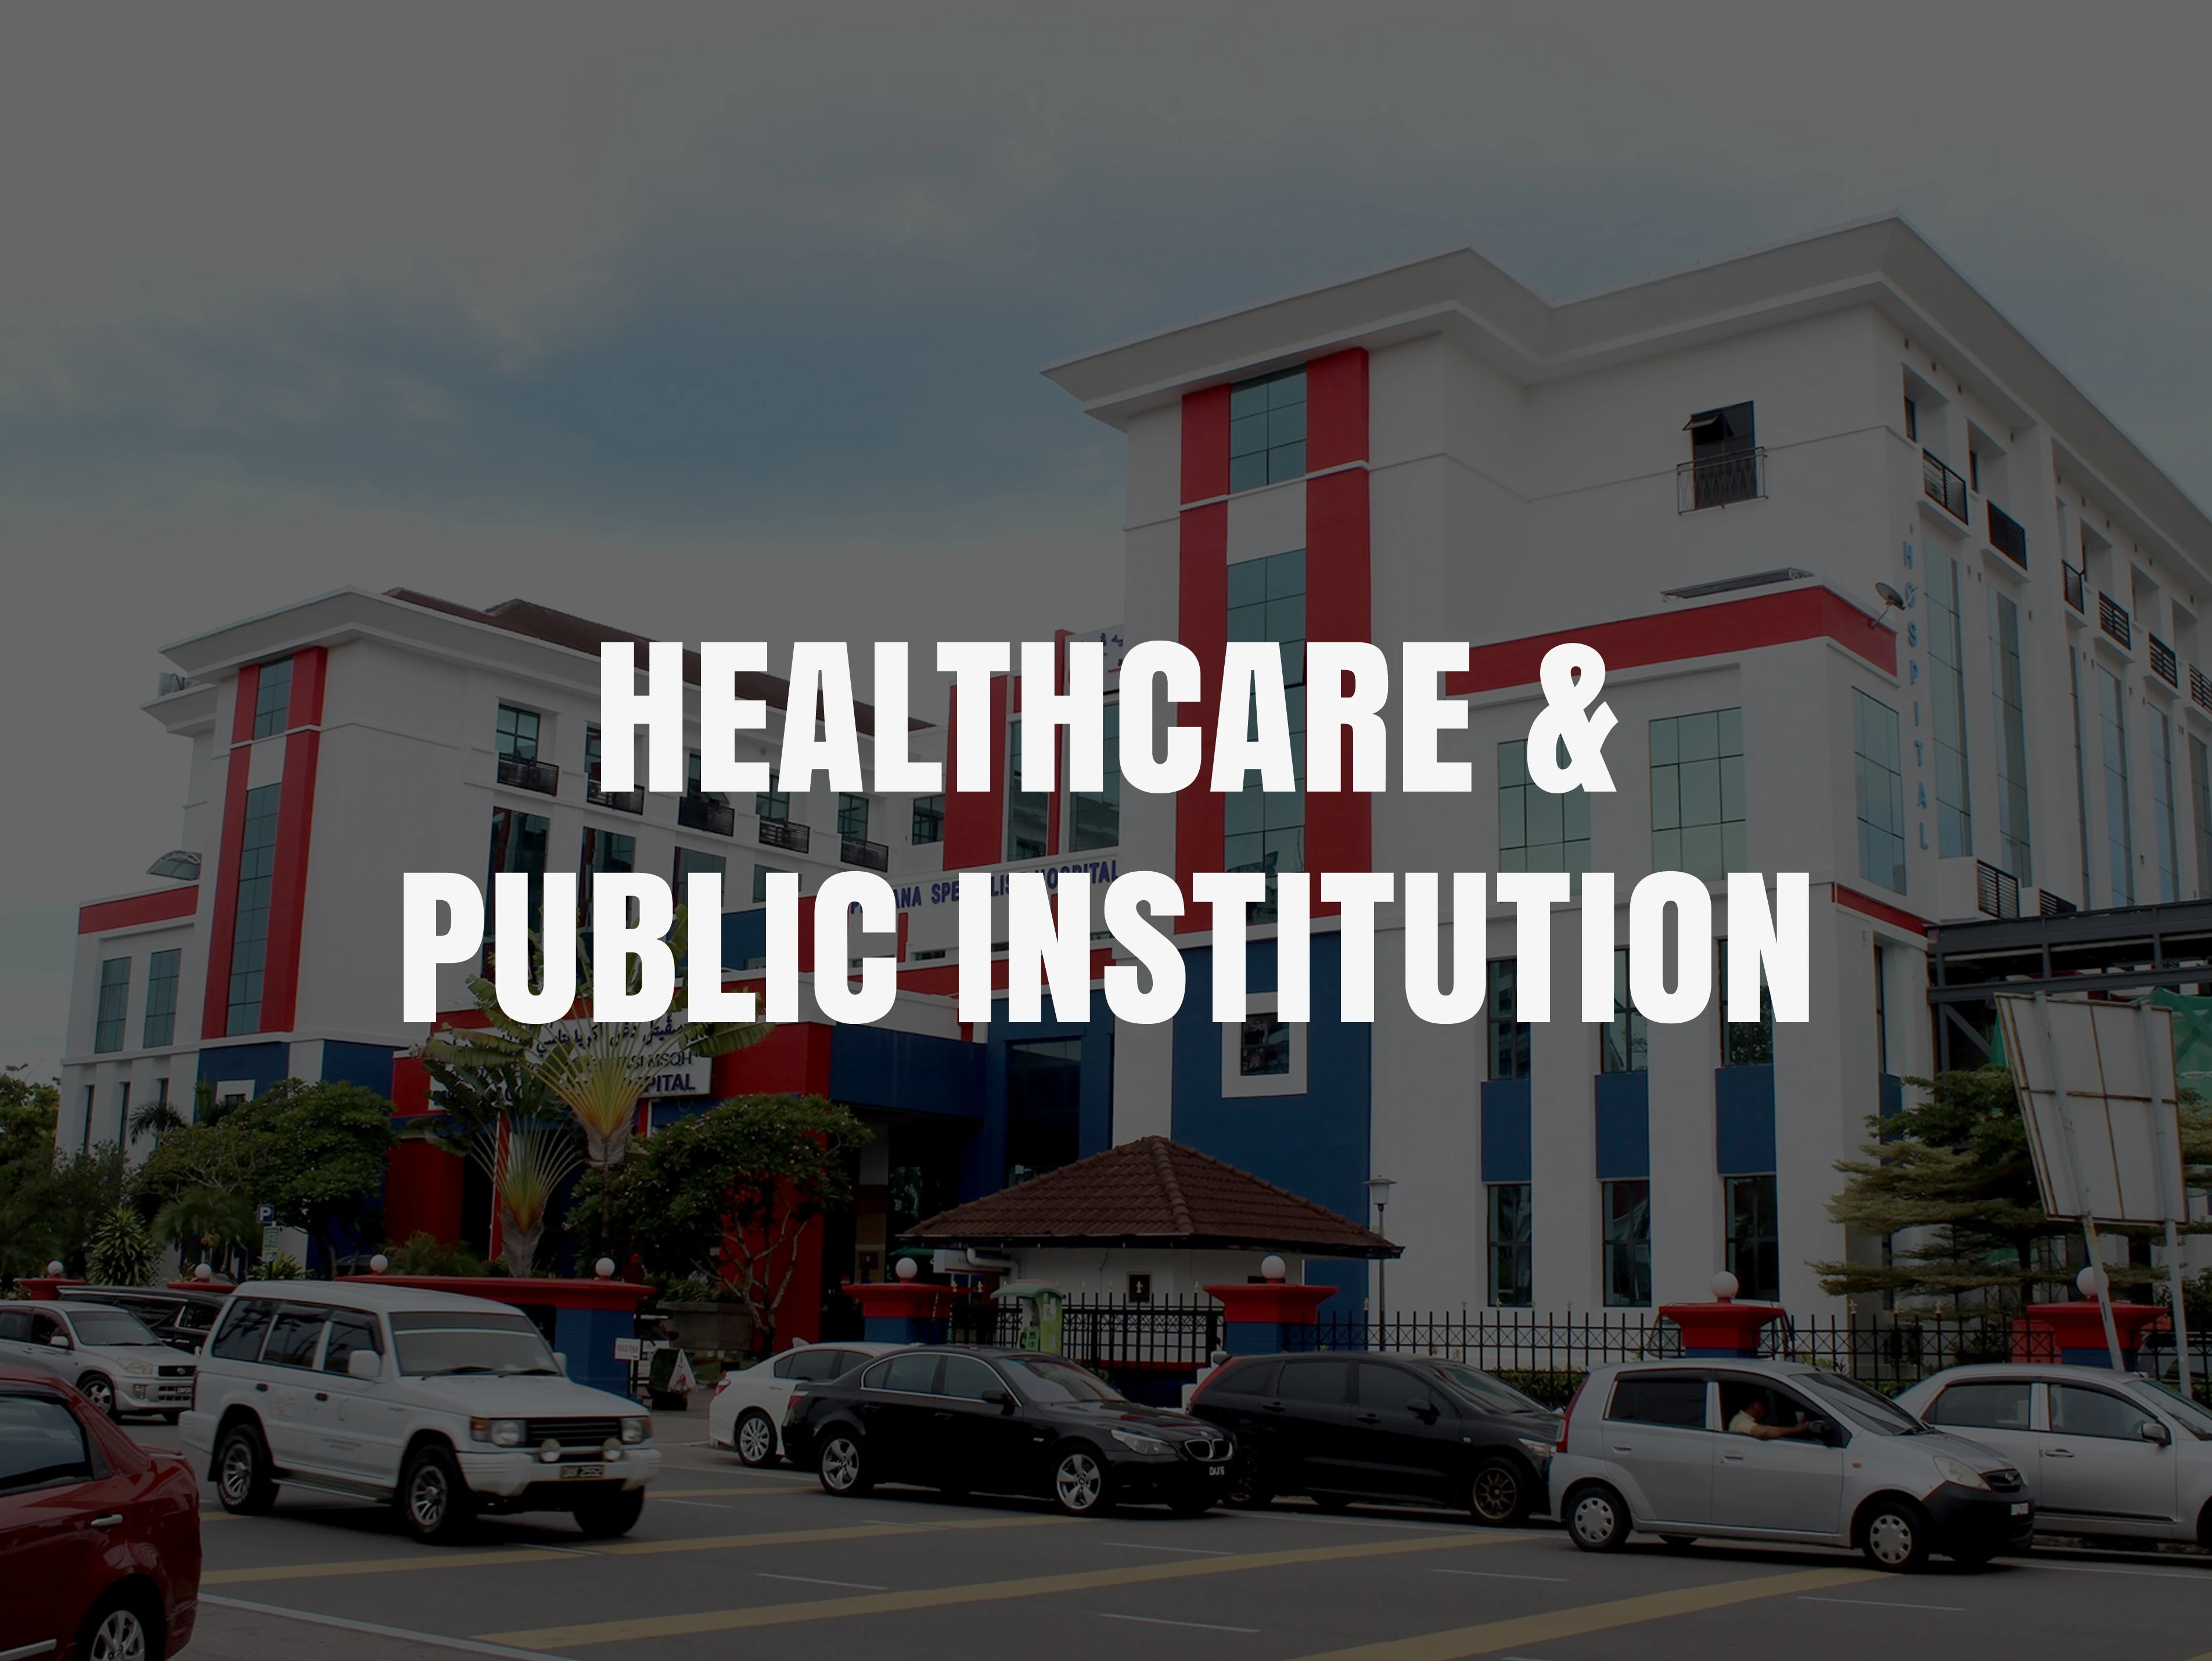 940-healthcare-public-institution-167367565183.jpg